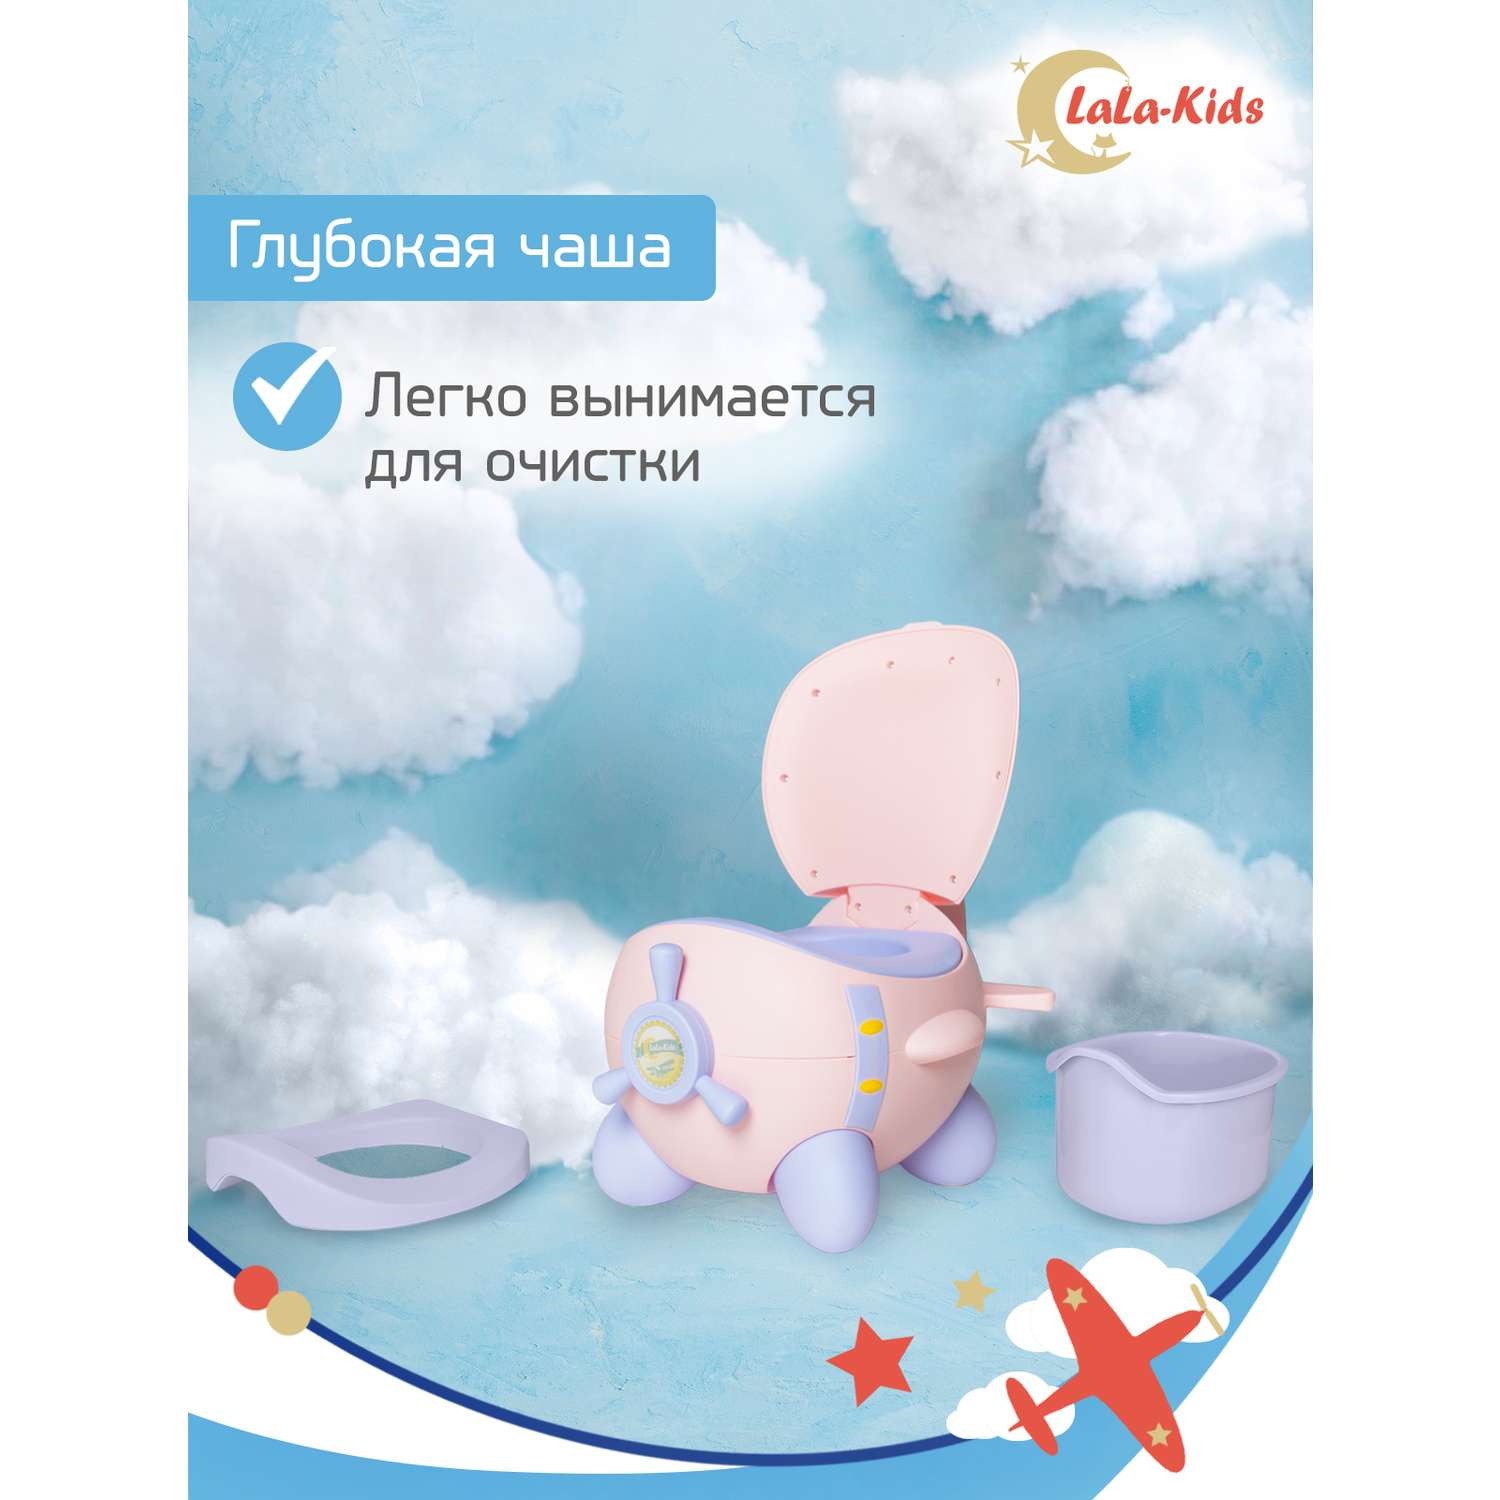 Горшок LaLa-Kids с мягким сиденьем Самолет розовый - фото 6